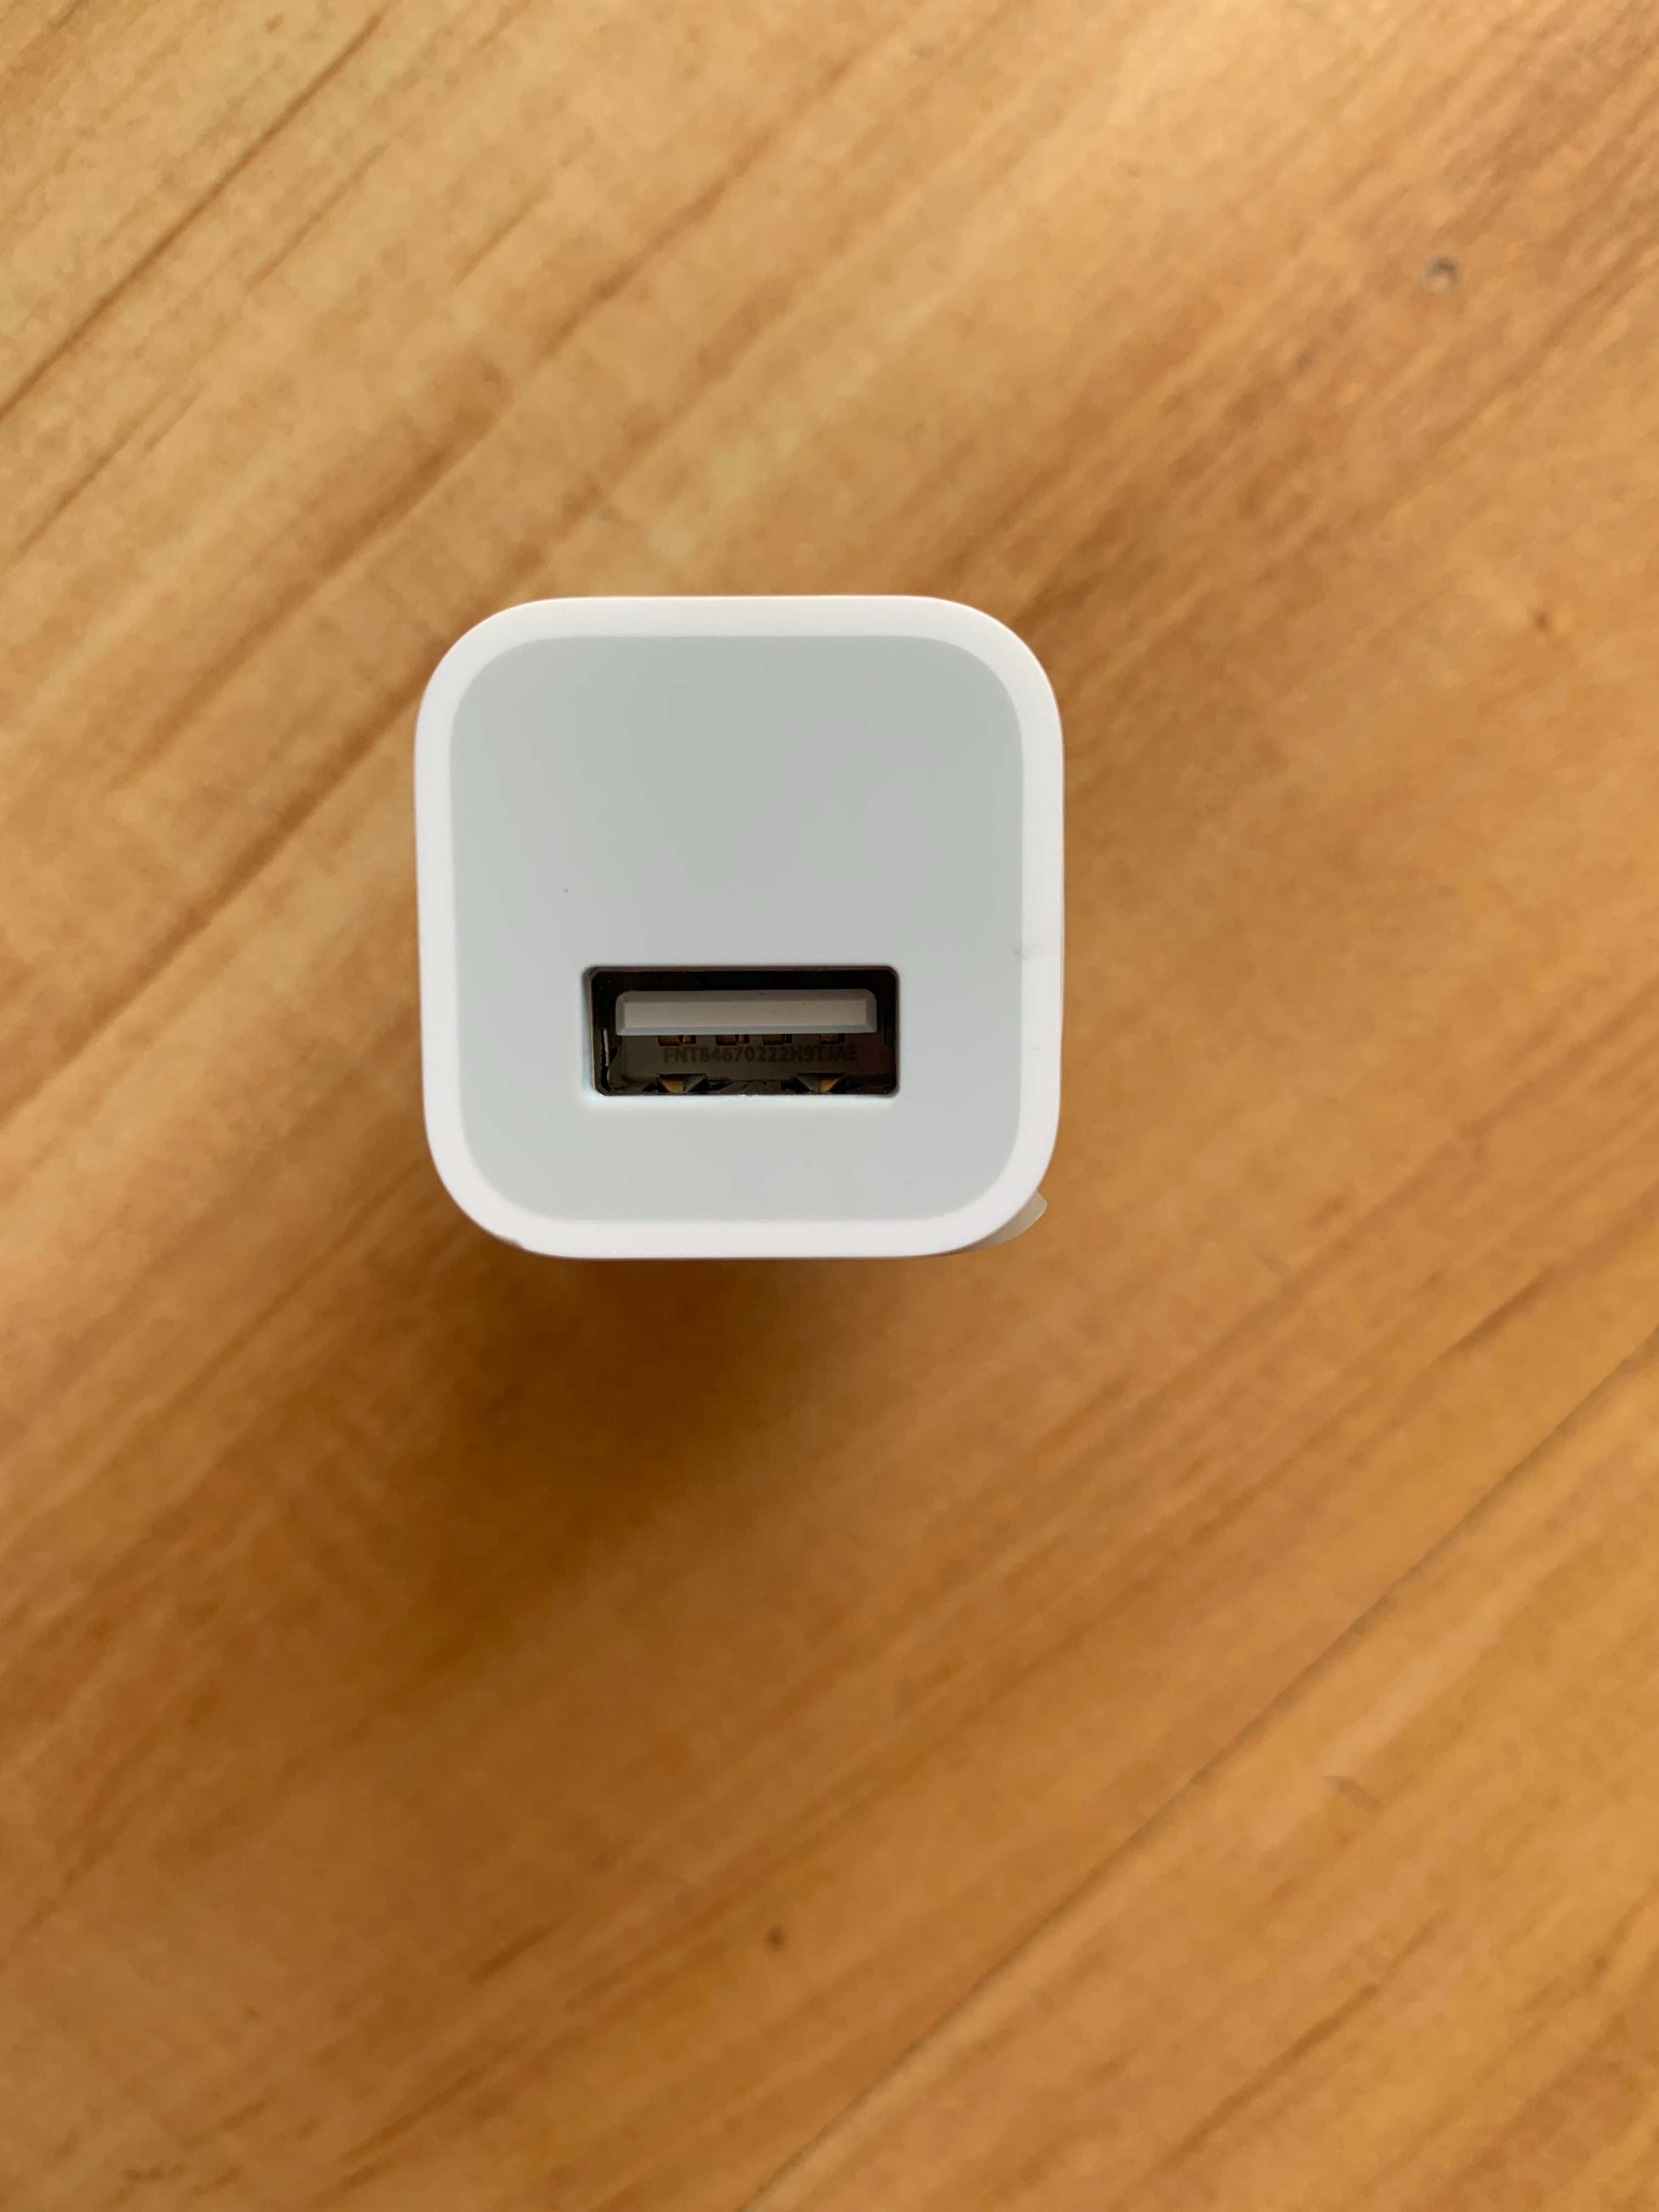 Оригинальный блок питания Apple Power Adapter USB  5w Вт iPhone Айфон